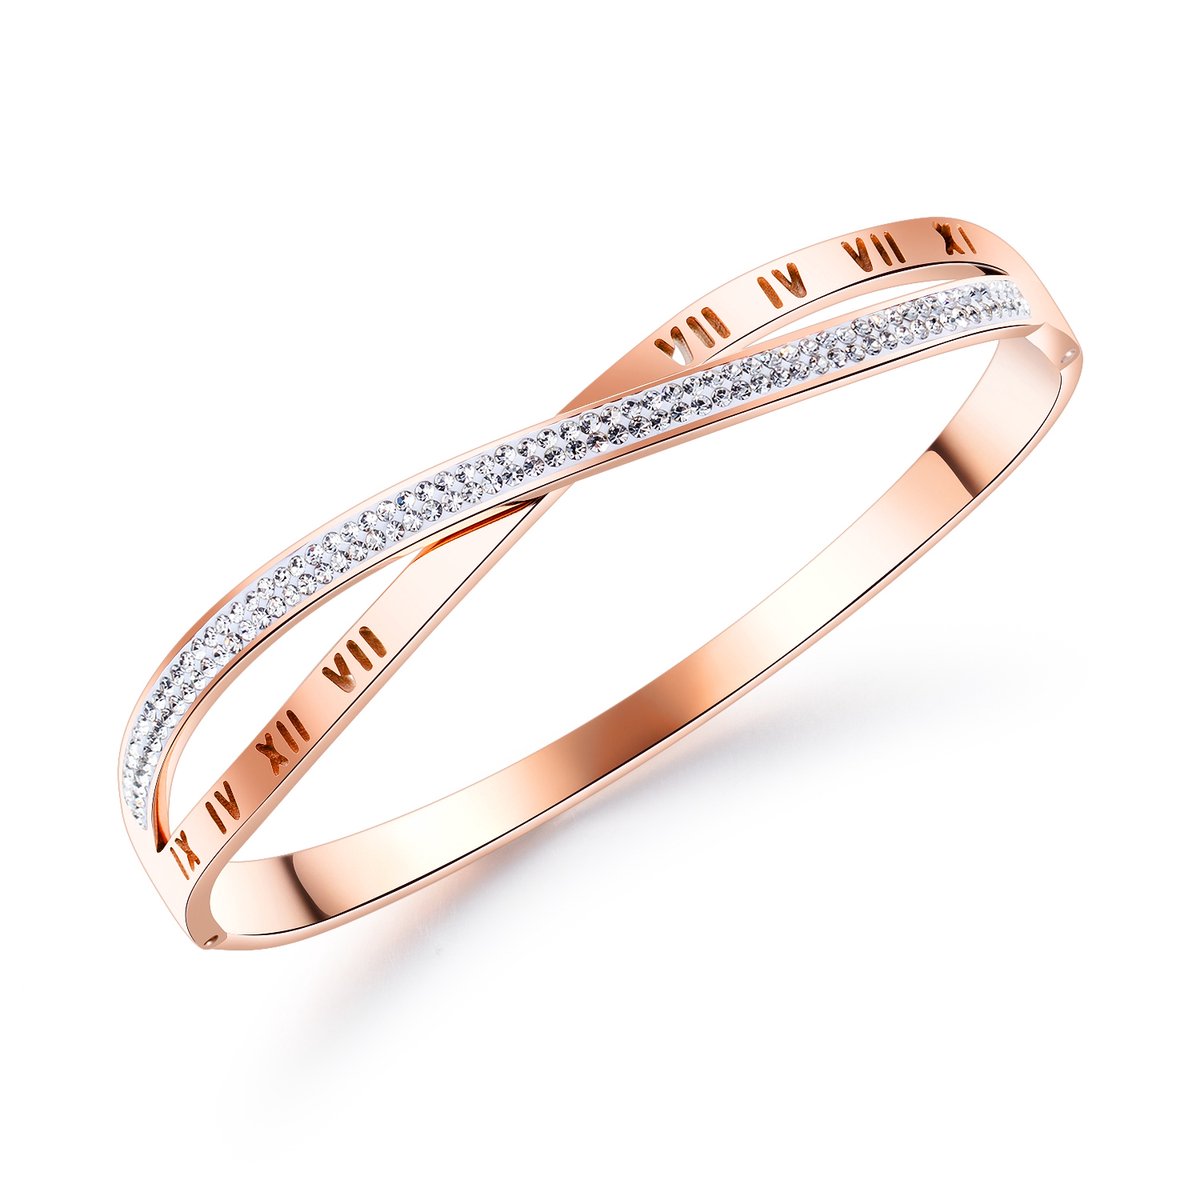 Subarashi Prachtige Armband leuke valentijn Diamanten armband met geschenkzakje voor vriendin-Dames gouden armband-Nieuwe design